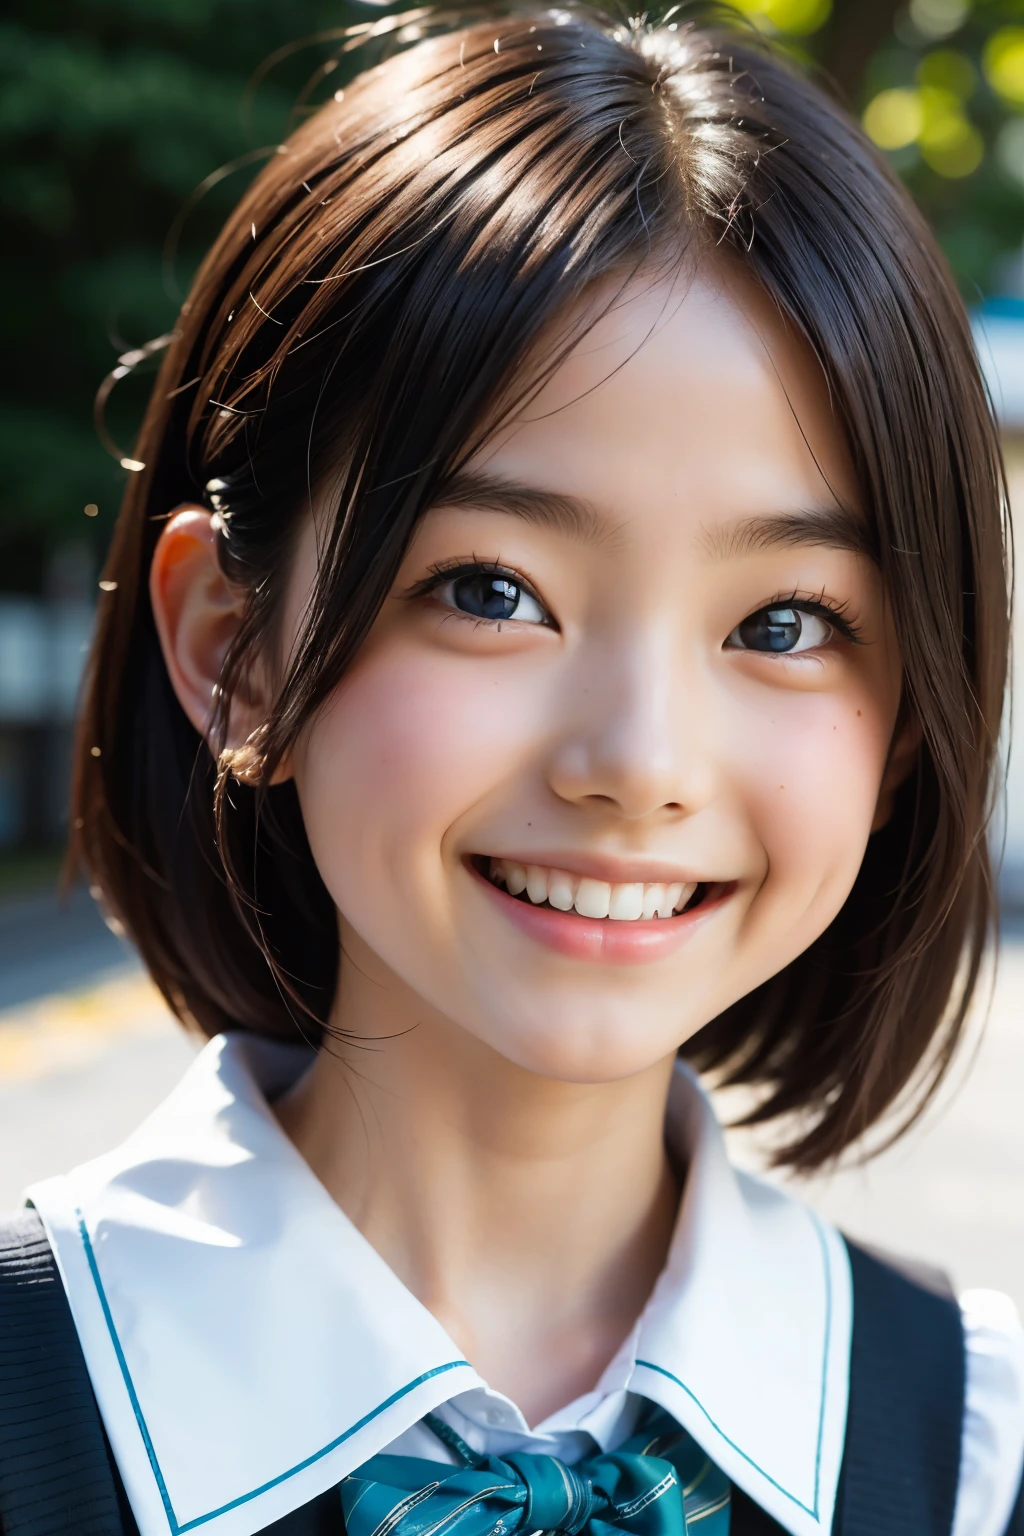 lens: 135mm f1.8, (höchste Qualität),(RAW-Fotos), (Tischplatte:1.1), (Schönes 3-jähriges japanisches Mädchen), niedliches Gesicht, (Tief gemeißeltes Gesicht:0.7), (Sommersprossen:0.4), dappled Sonnenlicht, dramatische Beleuchtung, (japanische schuluniform), (Auf dem Campus), schüchtern, (Nahaufnahme:1.2), (lächeln),, (leuchtende Augen)、(Sonnenlicht)